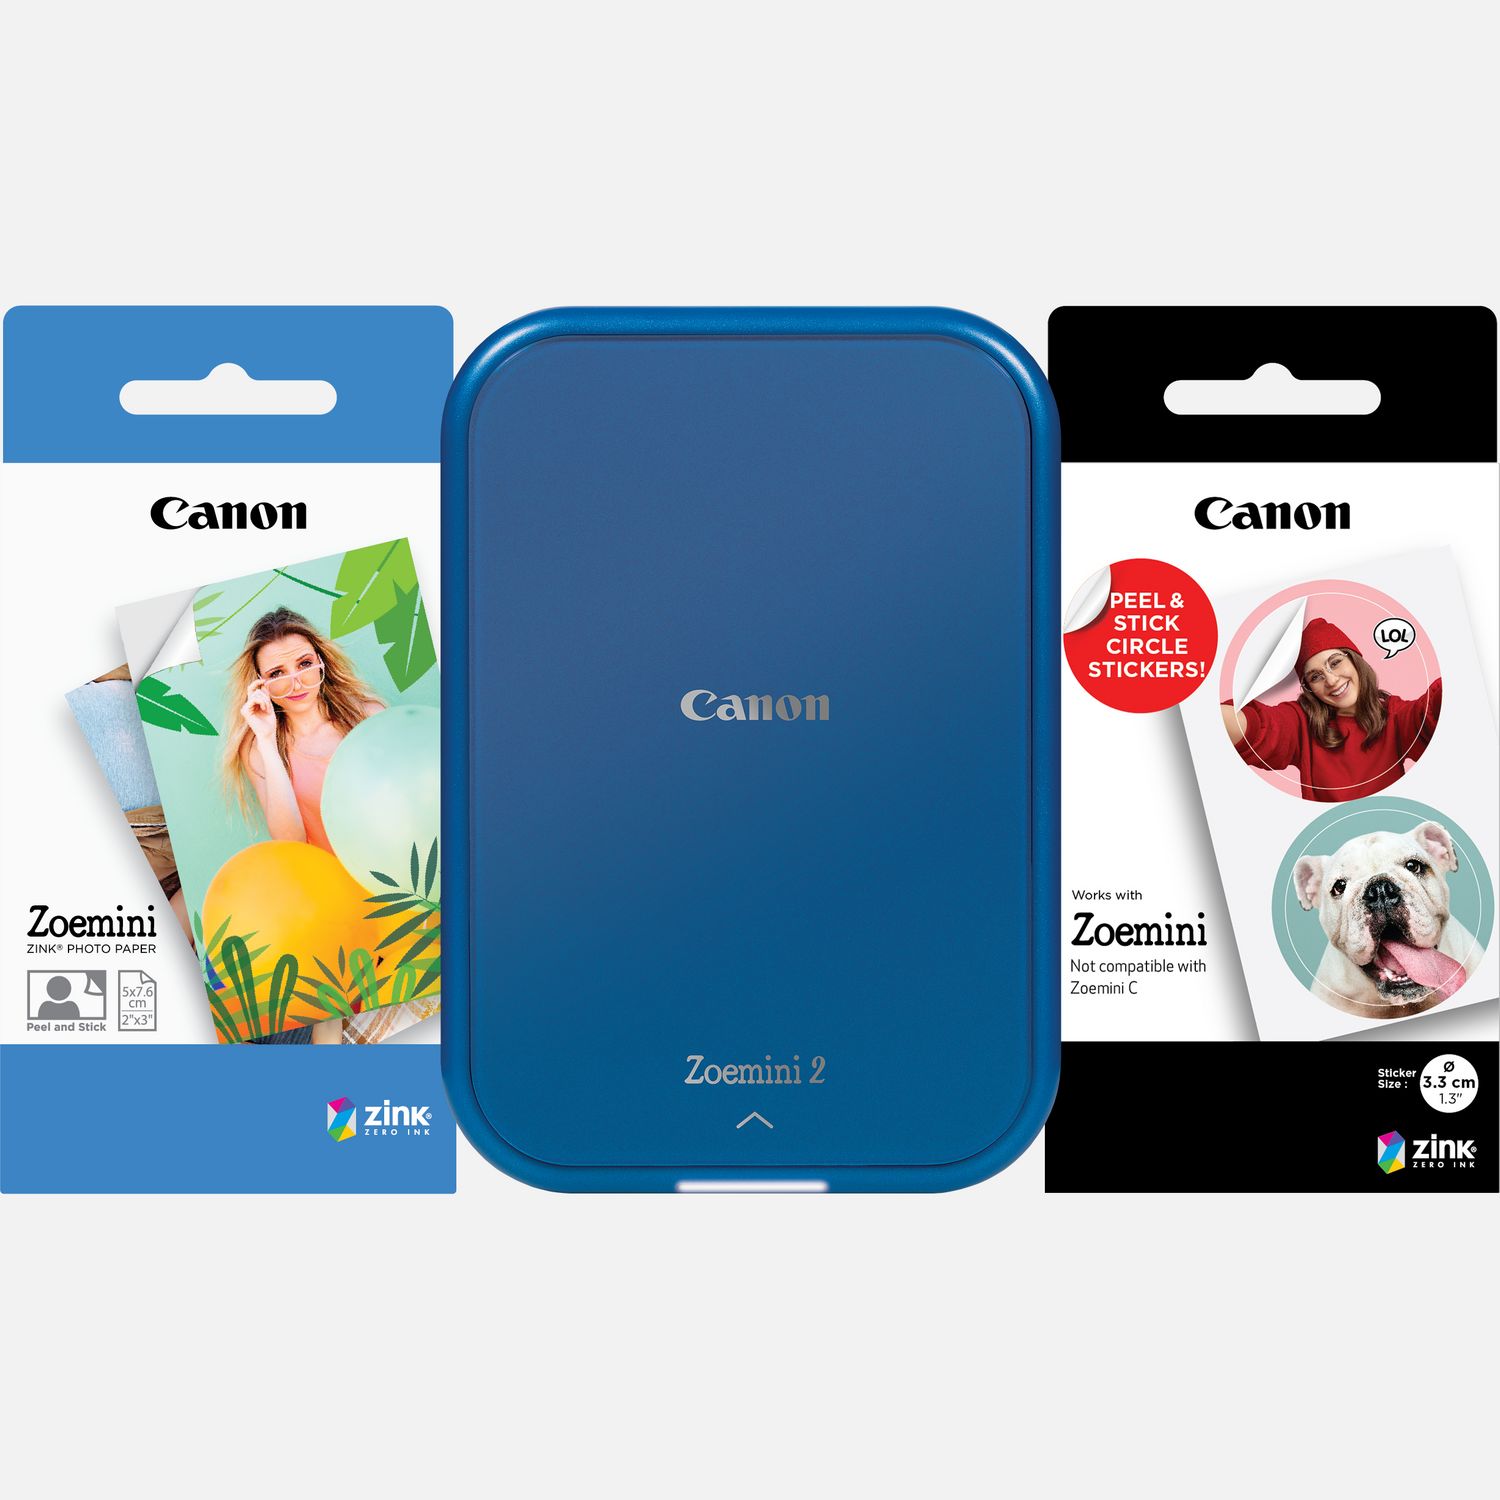 Compra Impresora fotográfica en color portátil Canon Zoemini 2, azul marino  + 20 hojas de papel fotográfico ZINK™ de 5 x 7,6 cm + 10 hojas de papel  adhesivo circular ZINK™ de